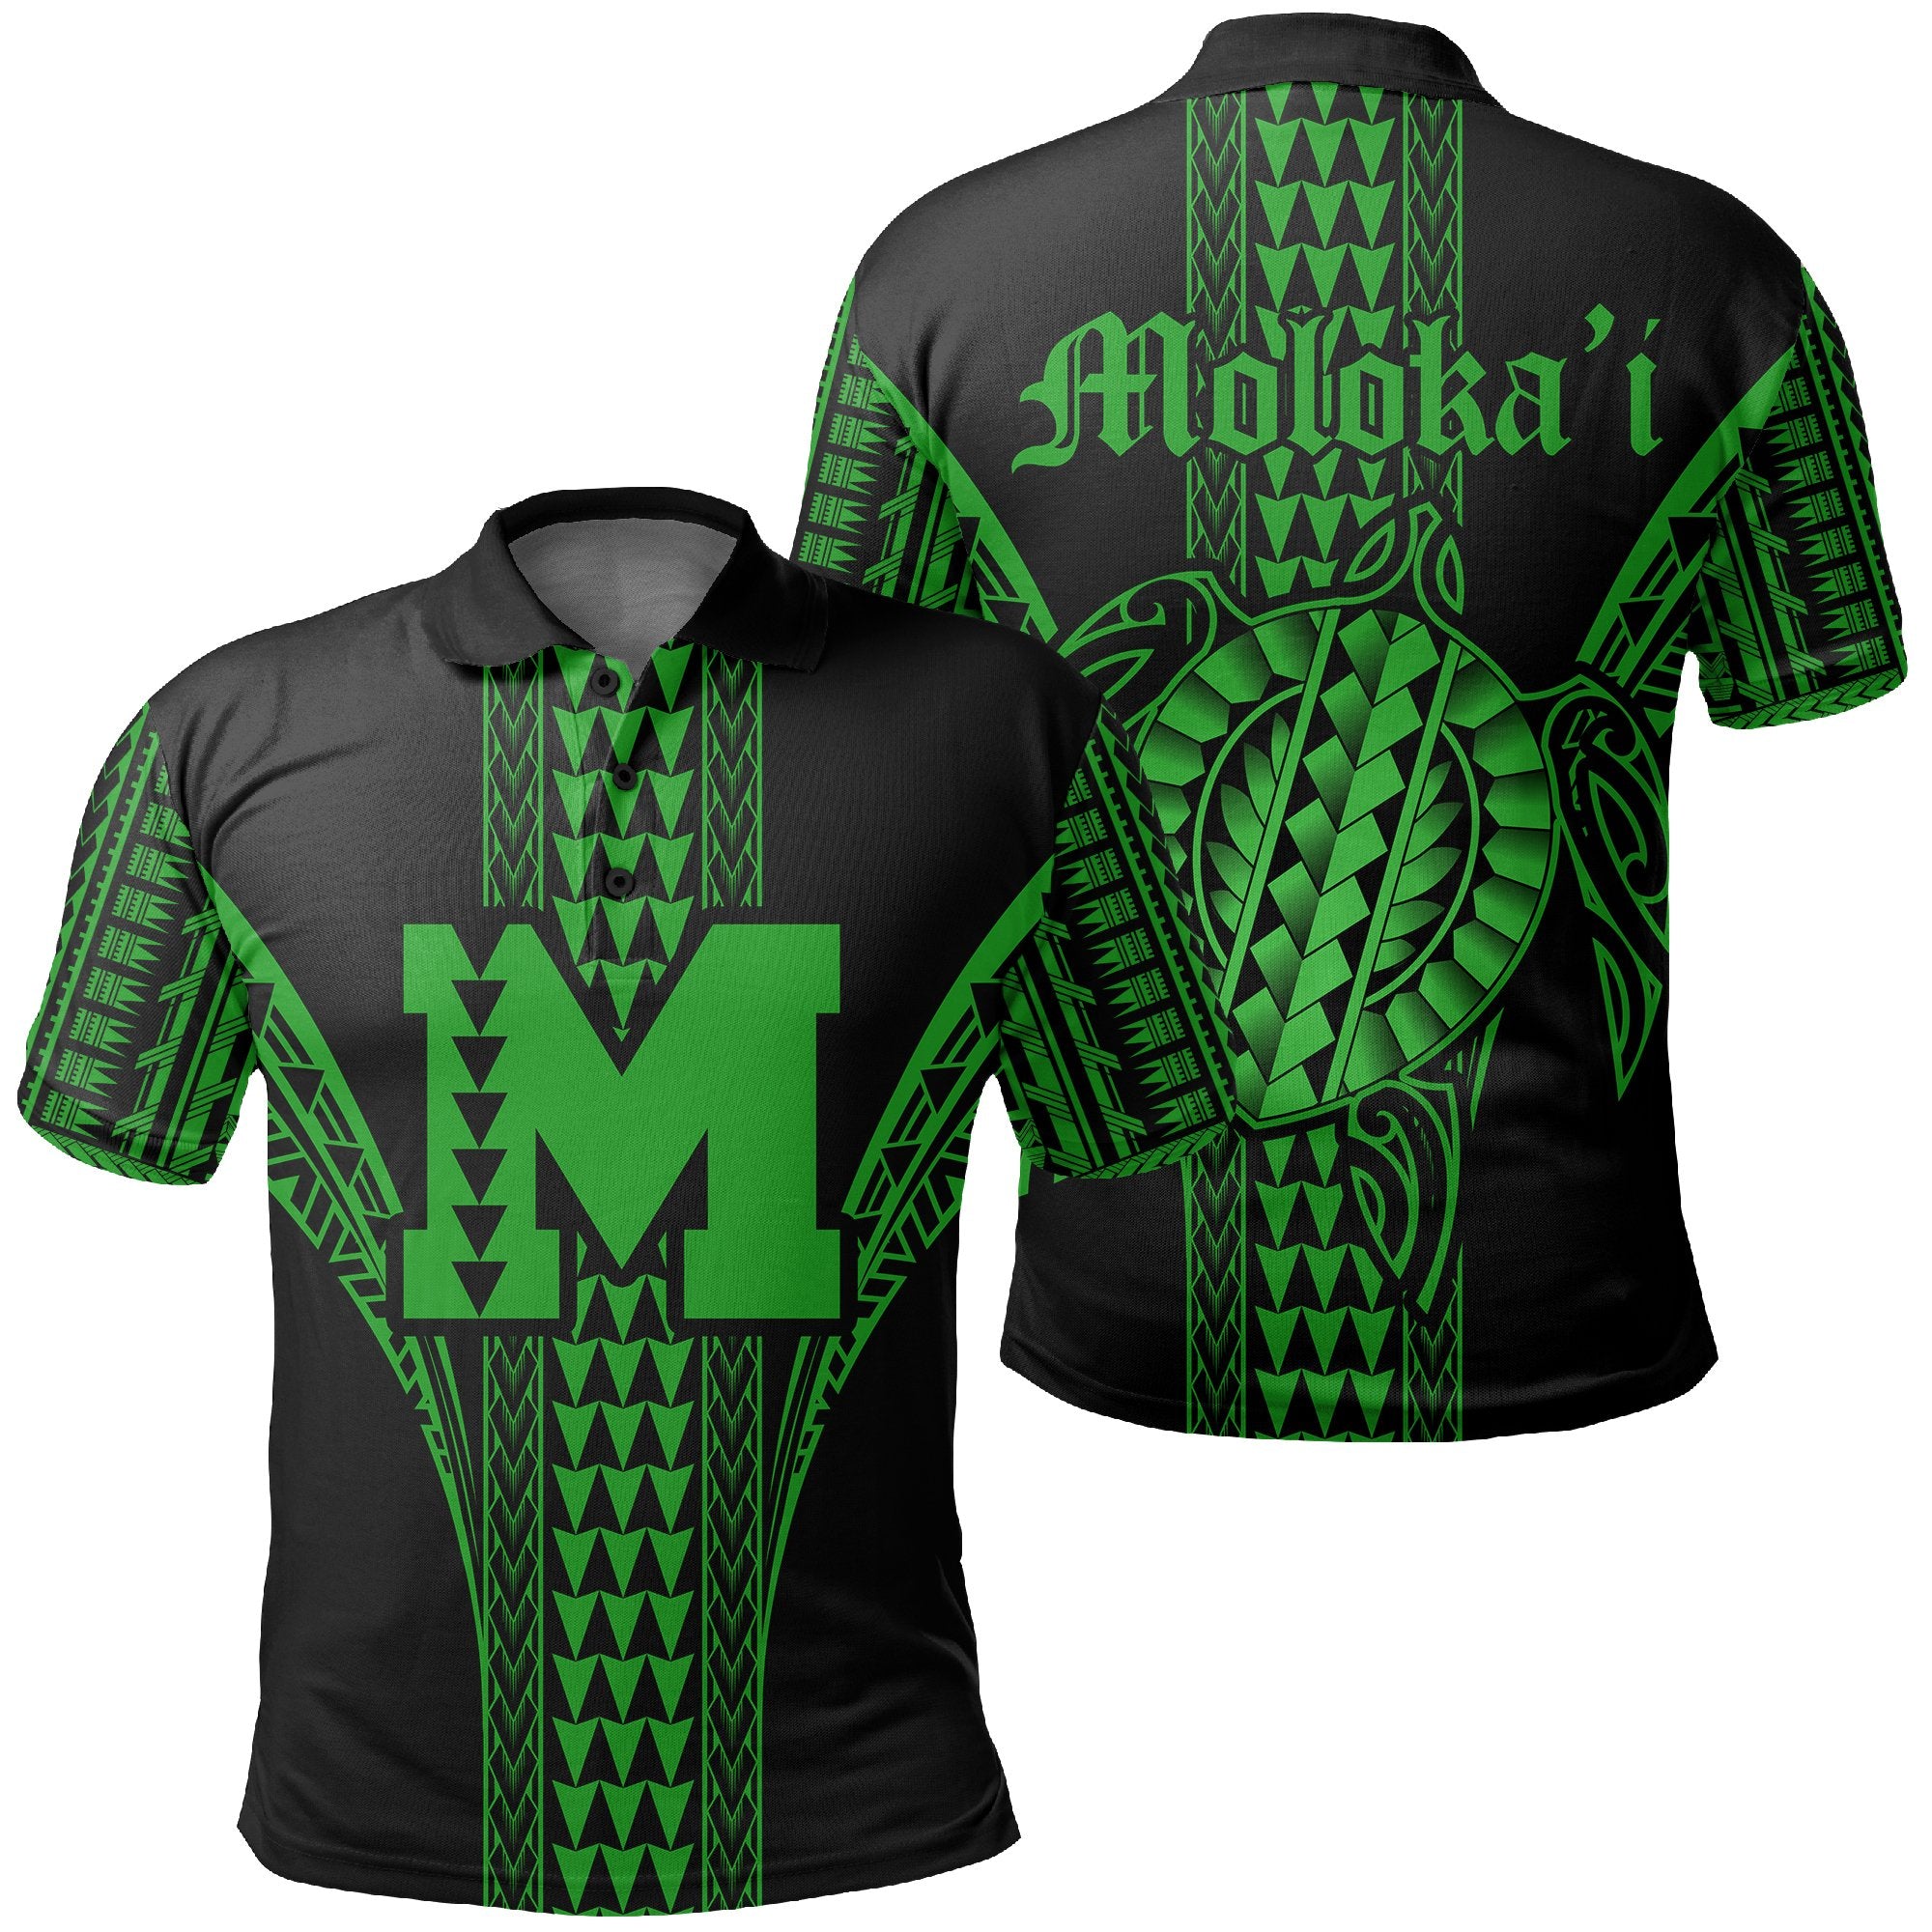 molokai-island-polynesian-polo-shirt-comely-style-ah